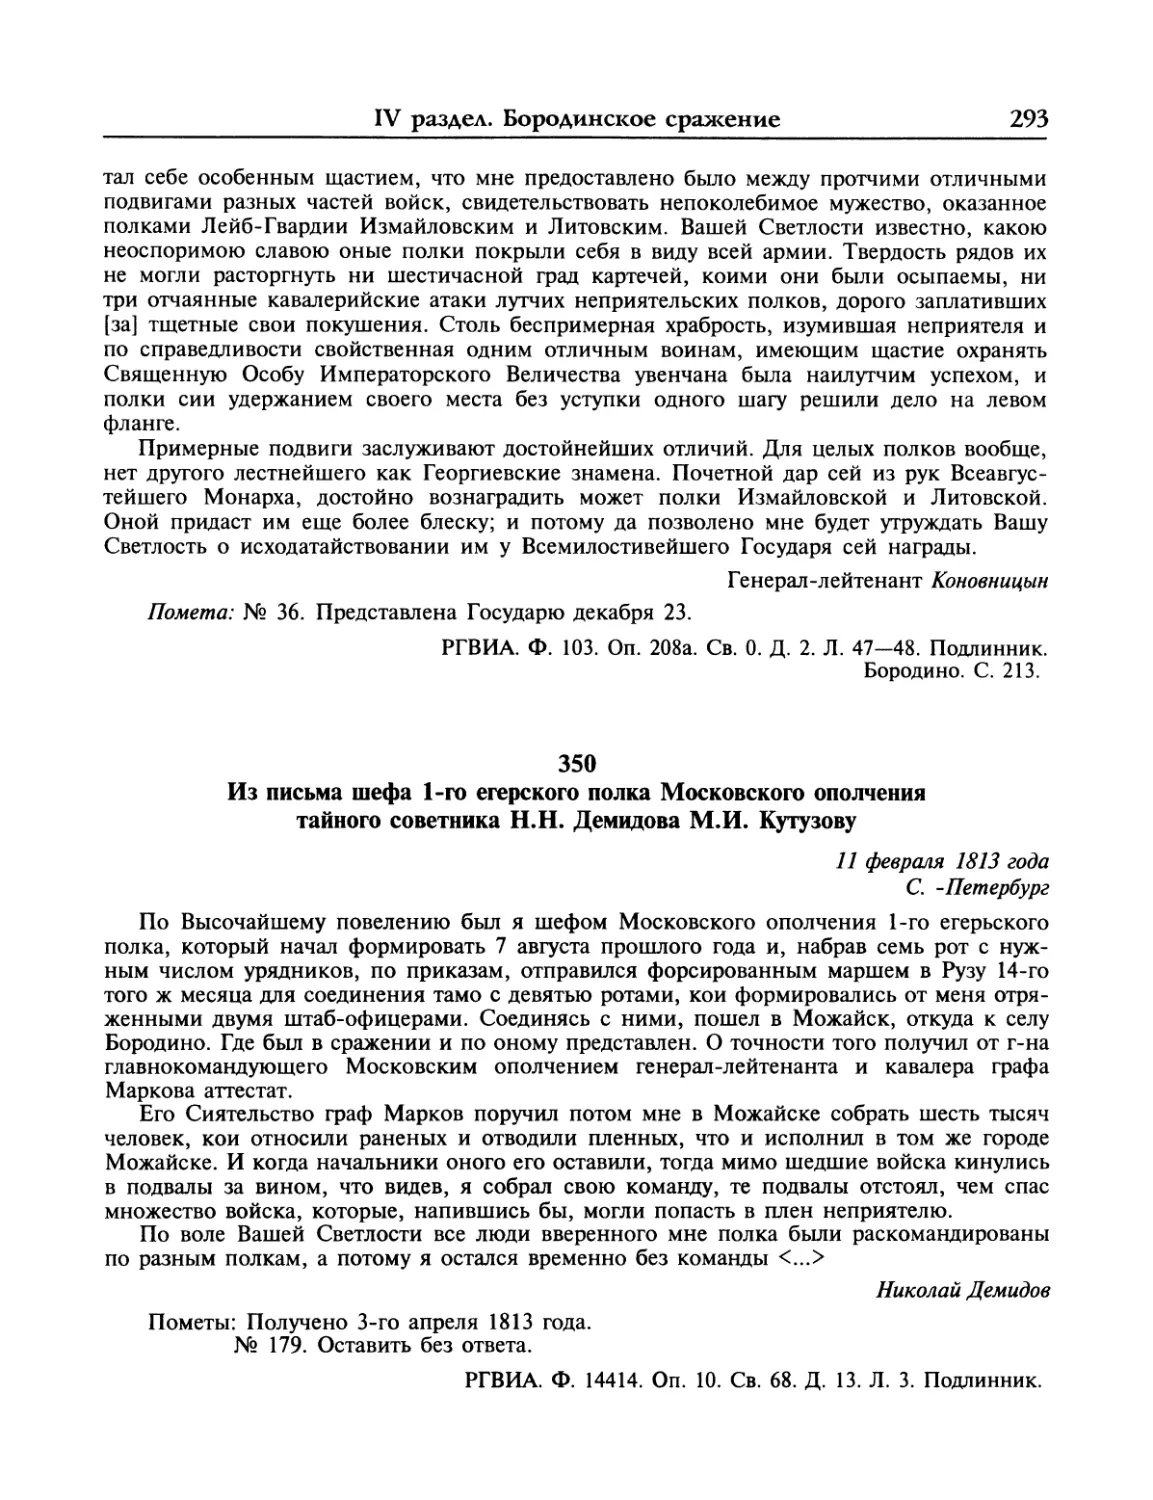 Из письма Н.Н.Демидова М.И.Кутузову